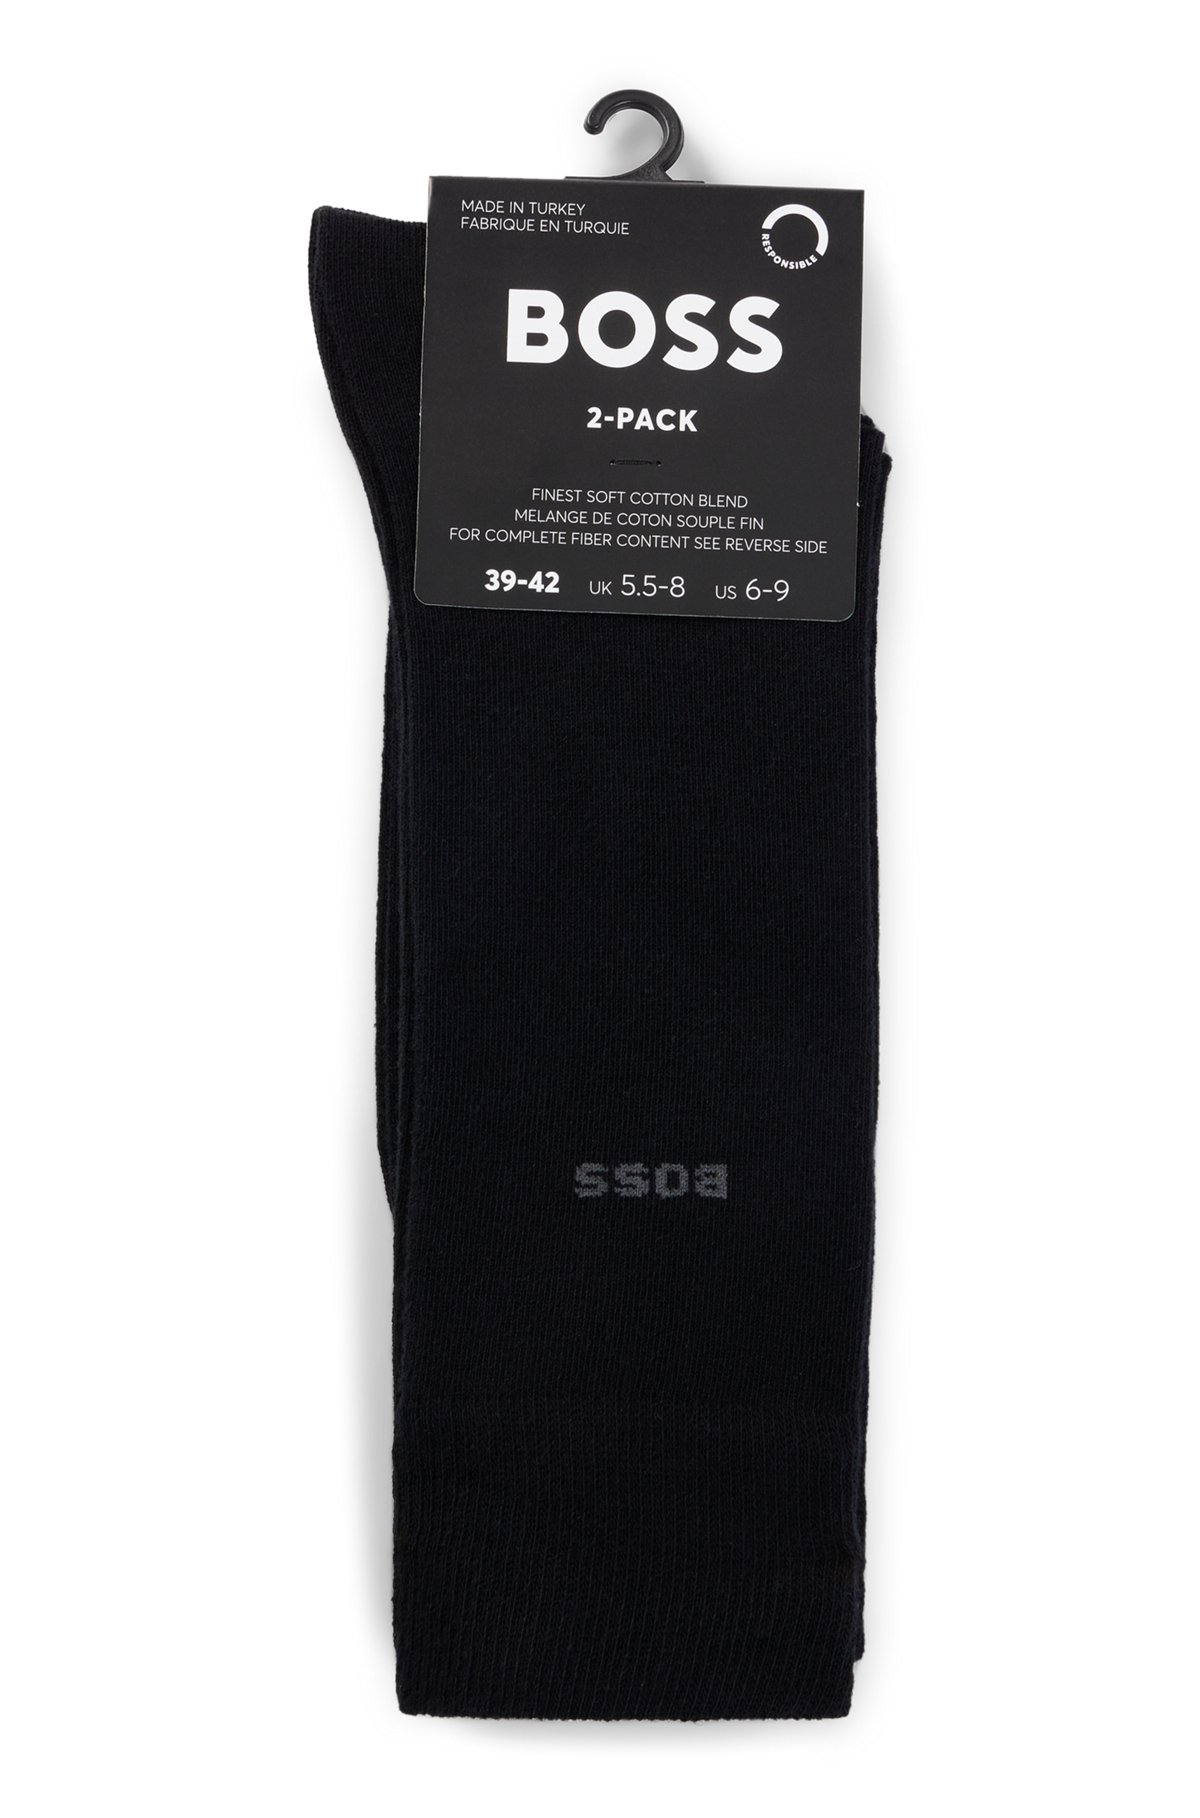 BOSS - Two-pack of regular-length socks in a cotton blend